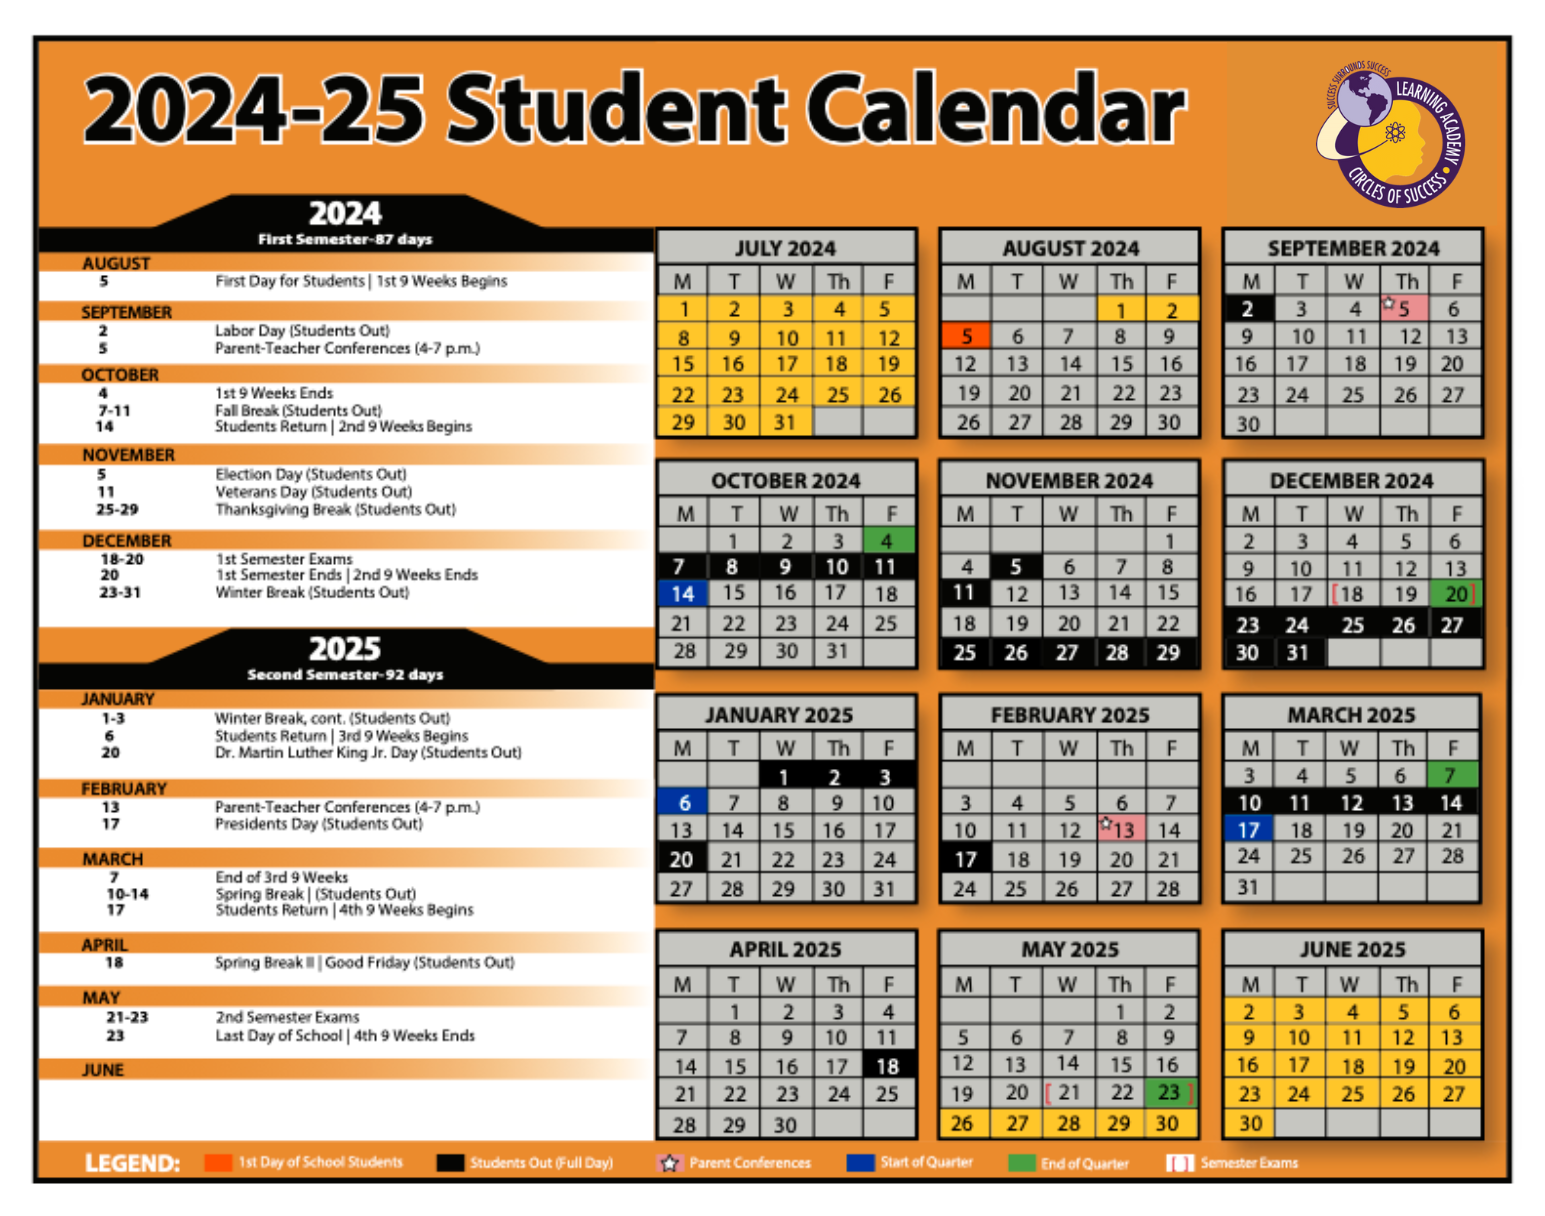 COSLA Calendar 2024-25